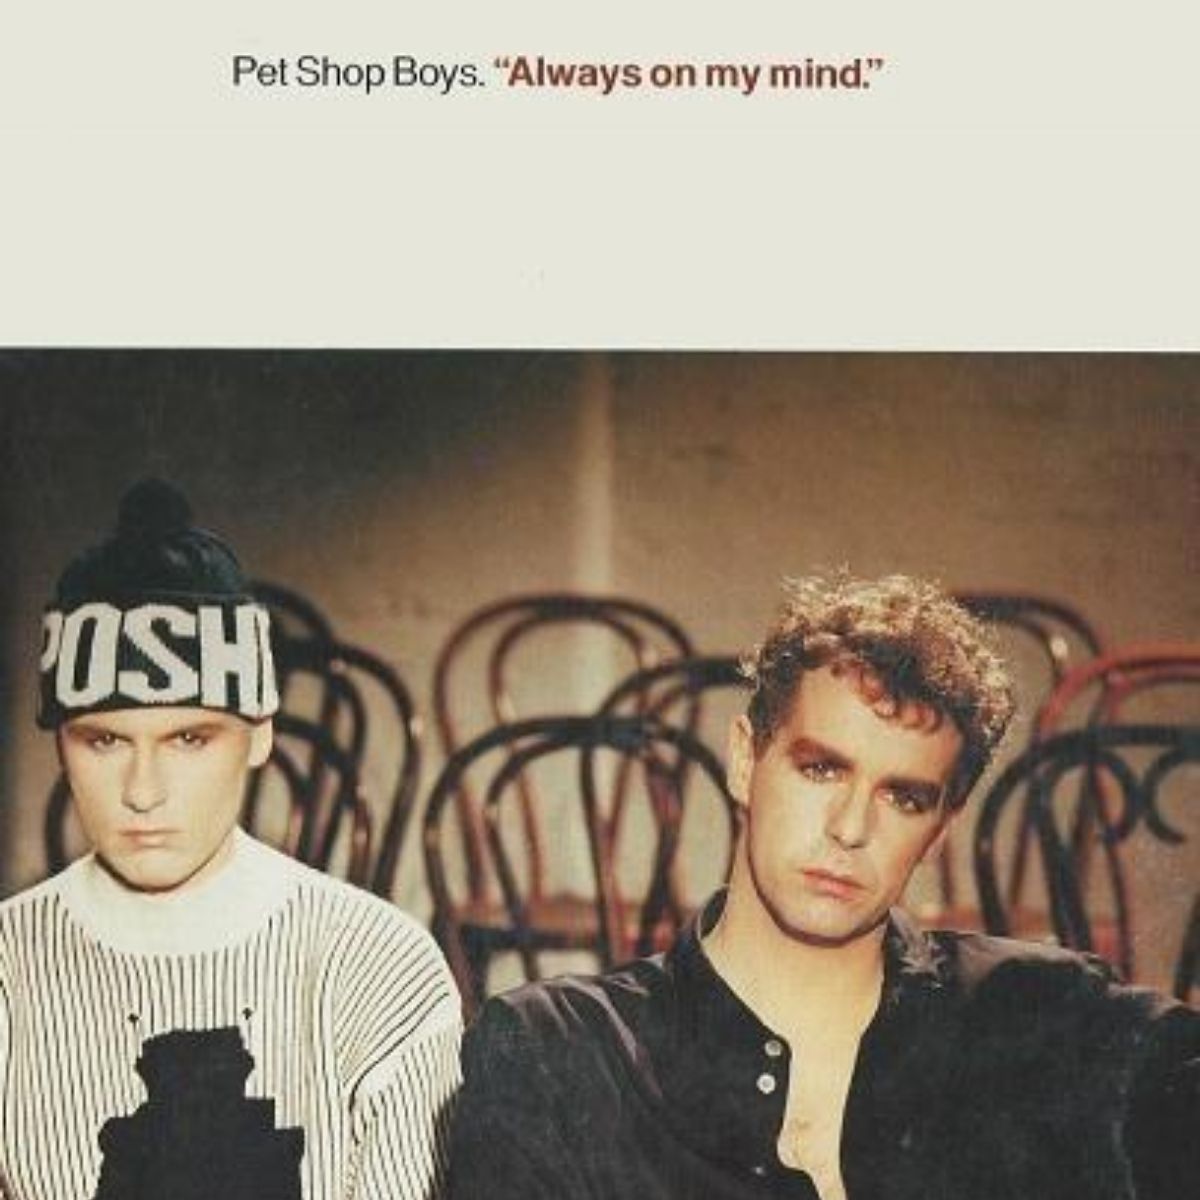 Arte de la portada del single de los Pet Shop Boys "Always on My Mind"